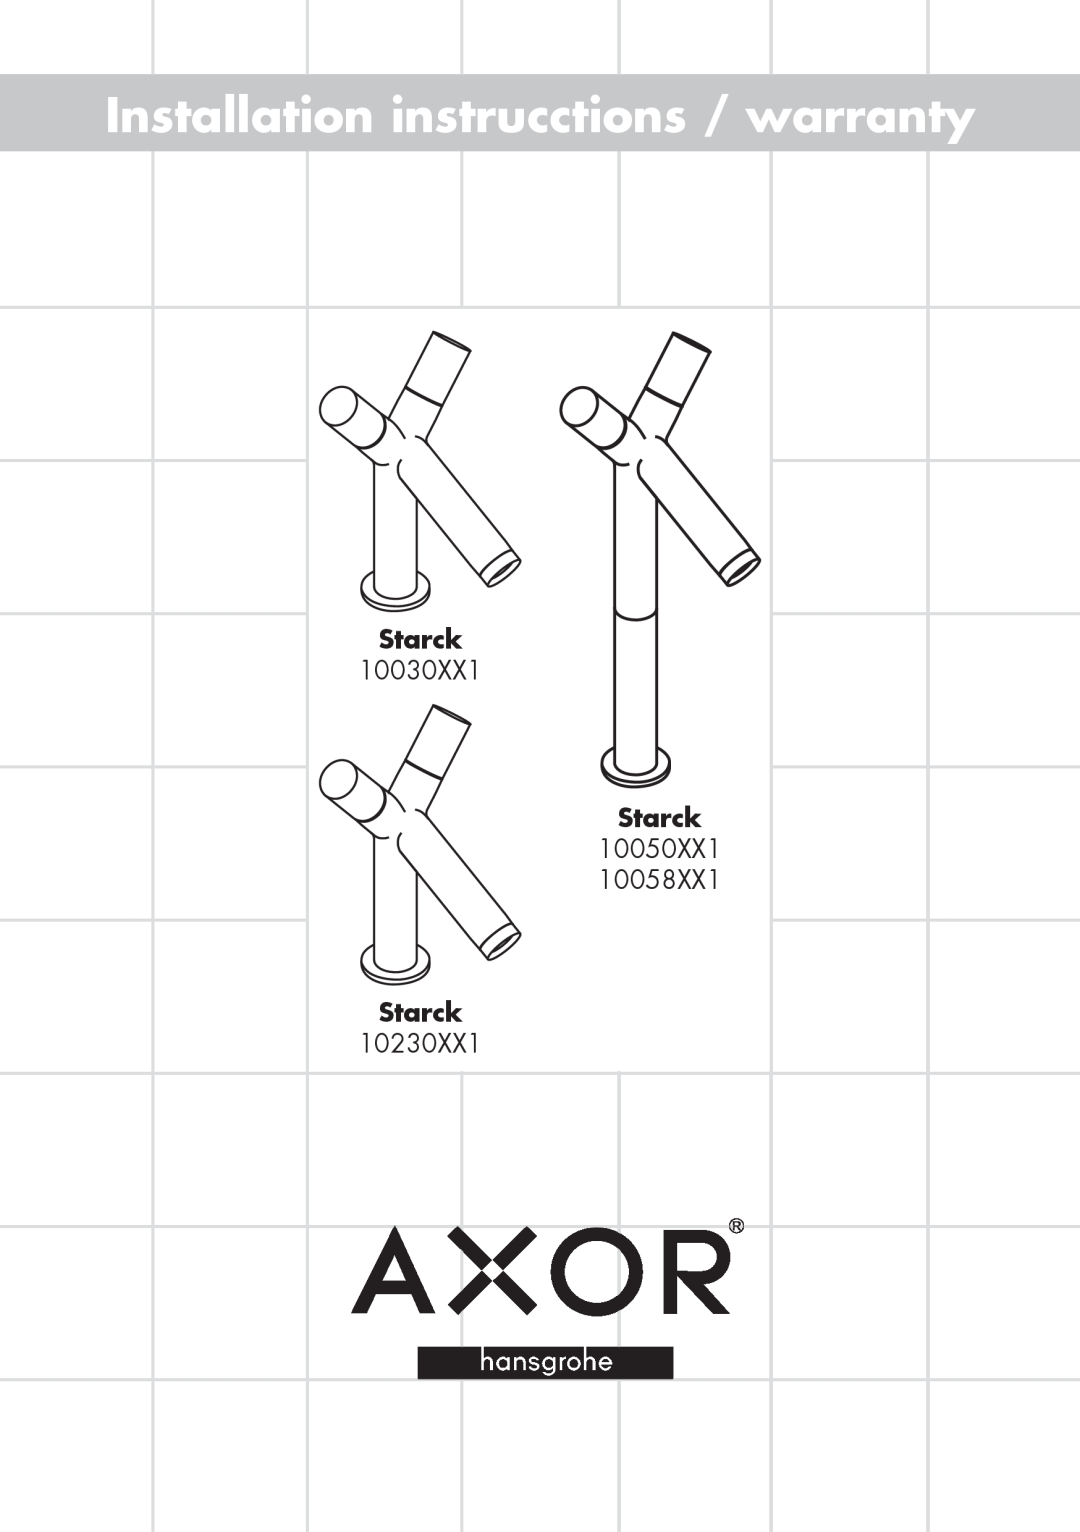 Axor warranty Installation instrucctions / warranty, Starck, 10030XX1, 10050XX1 10058XX1, 10230XX1 